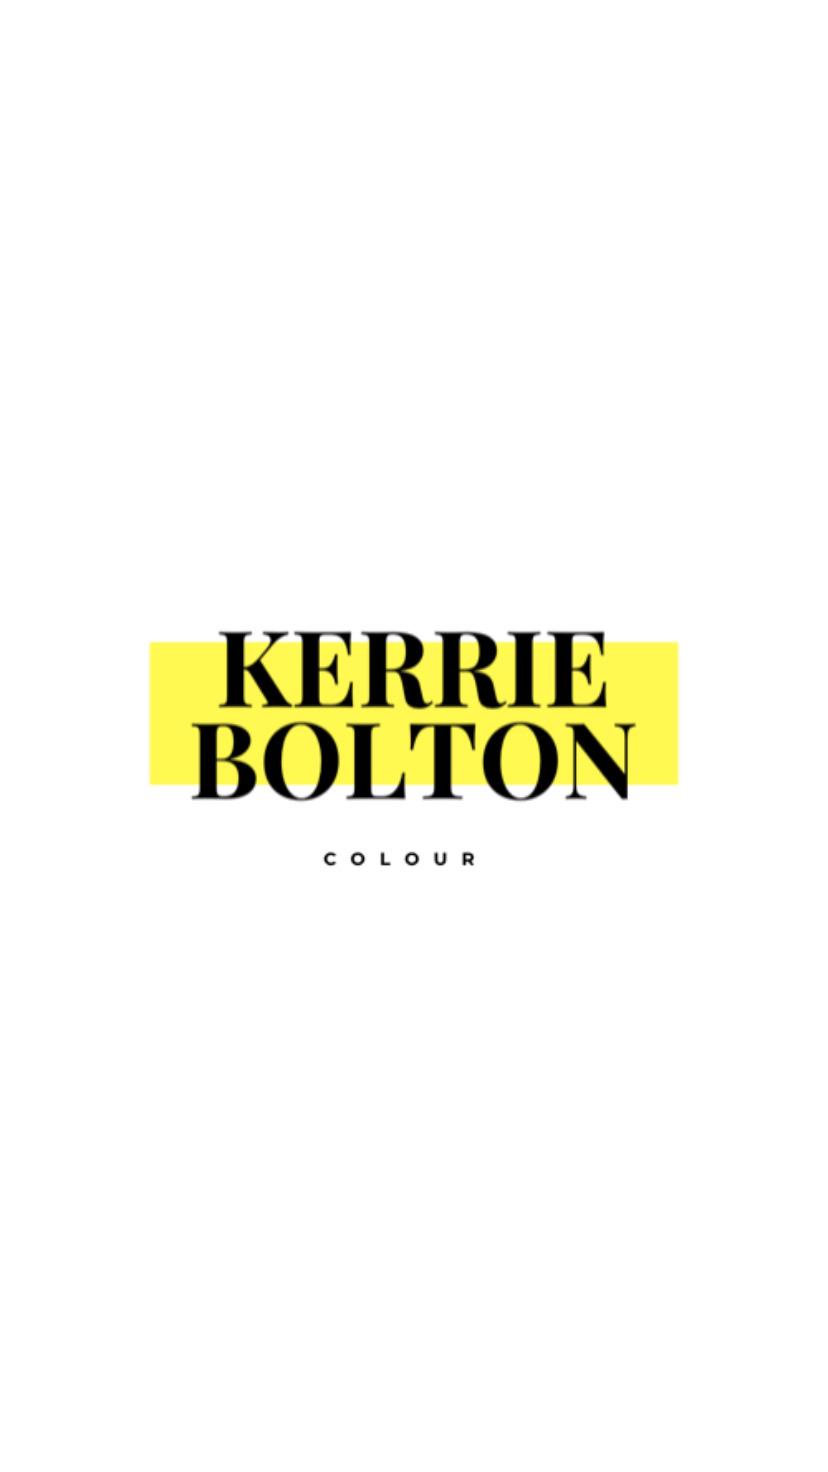 Kerrie Bolton Colour